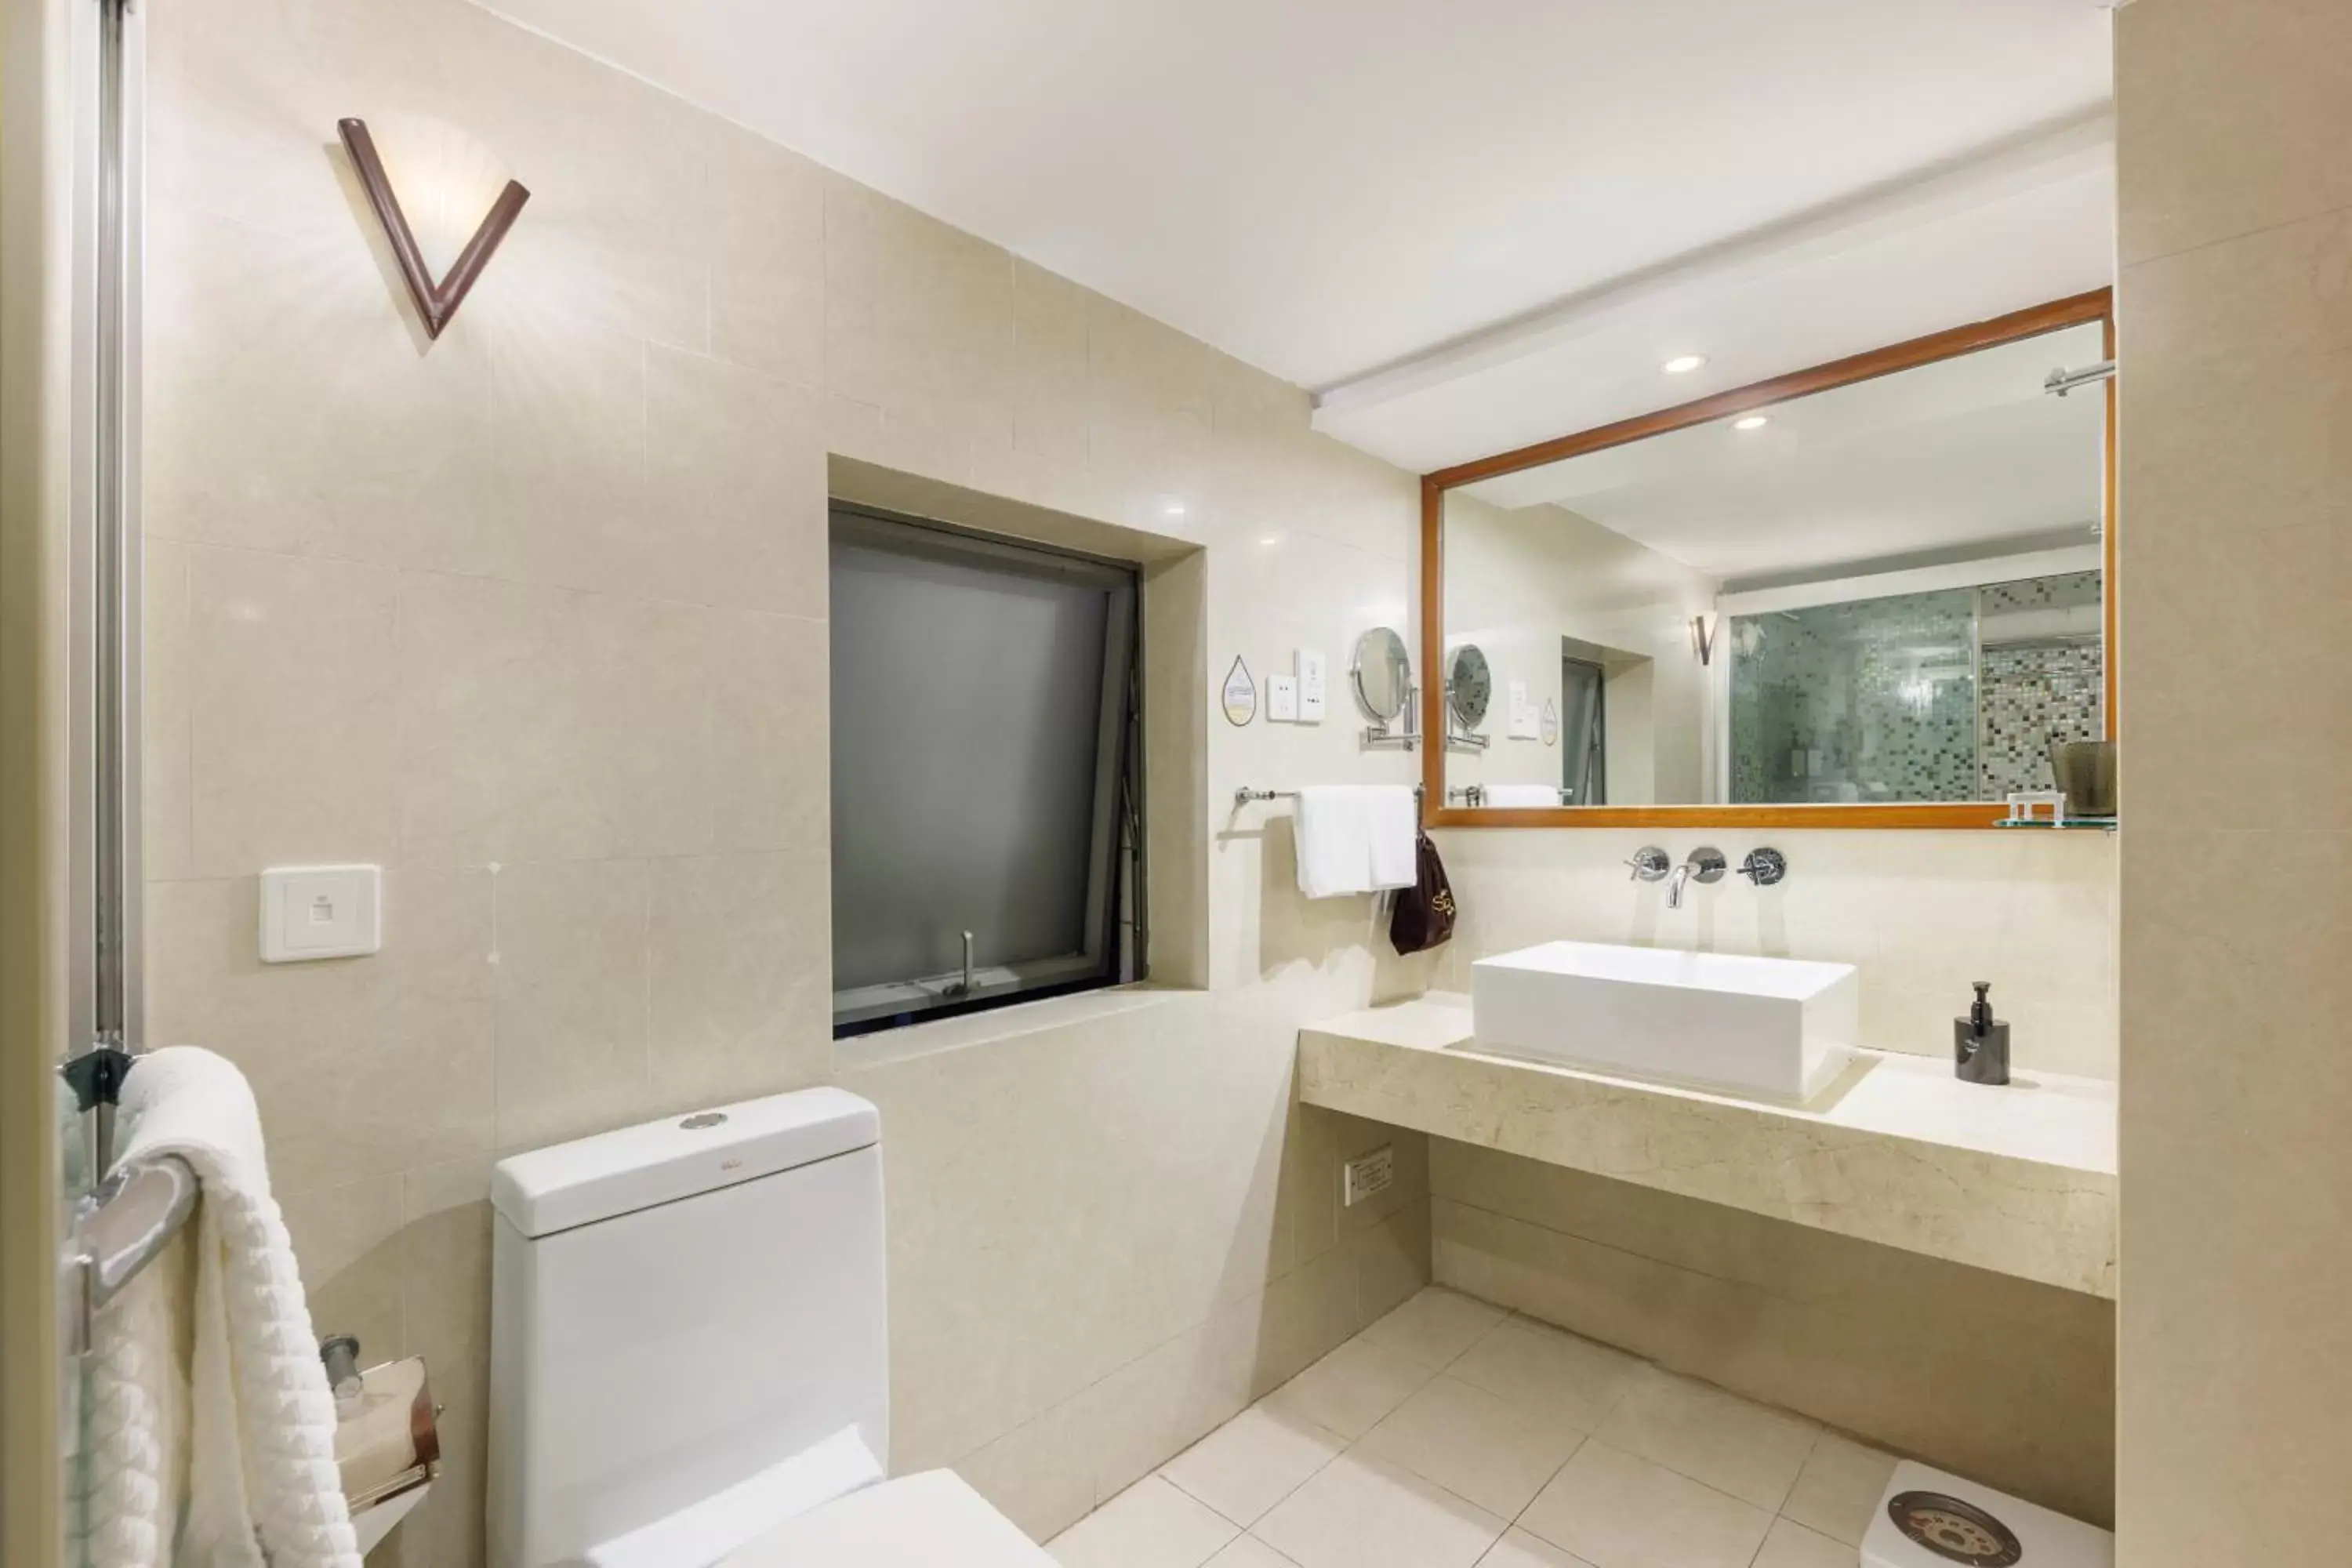 Toilet, Bathroom in Sunflower Hotel & Residence, Shenzhen